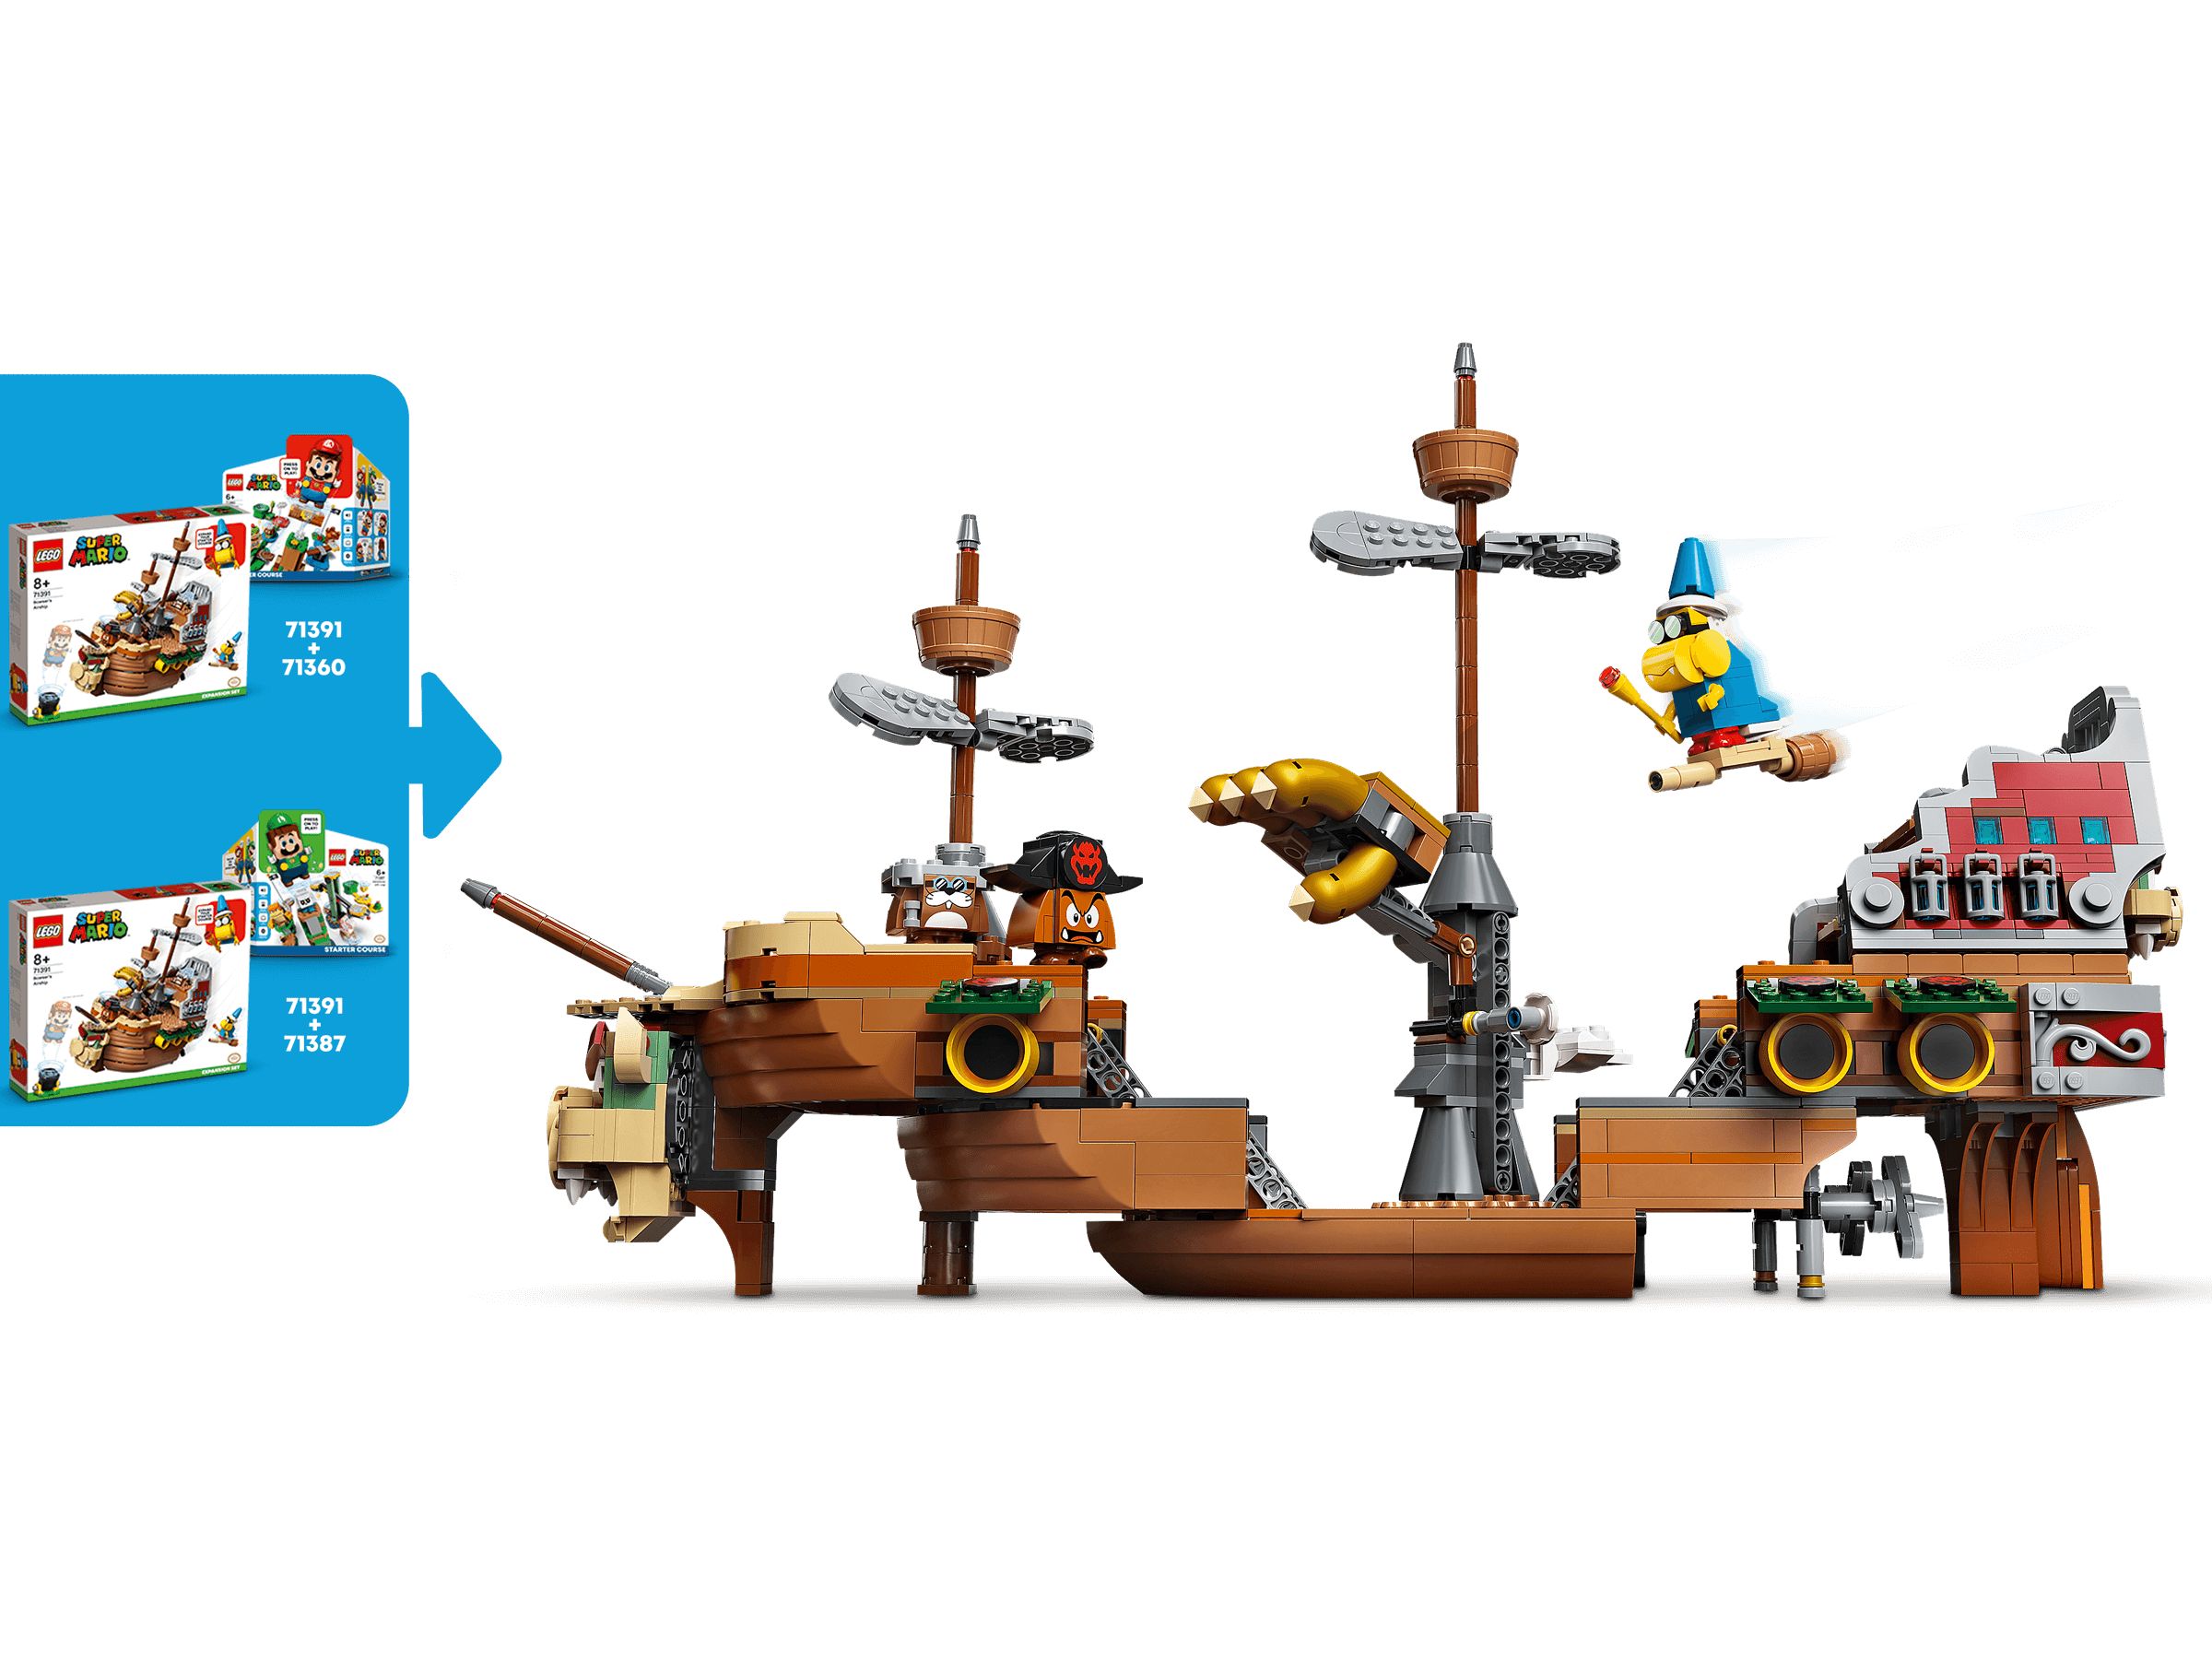 LEGO Super Mario 71391 Bowsers Luftschiff – Erweiterungsset LEGO_71391_alt6.jpg